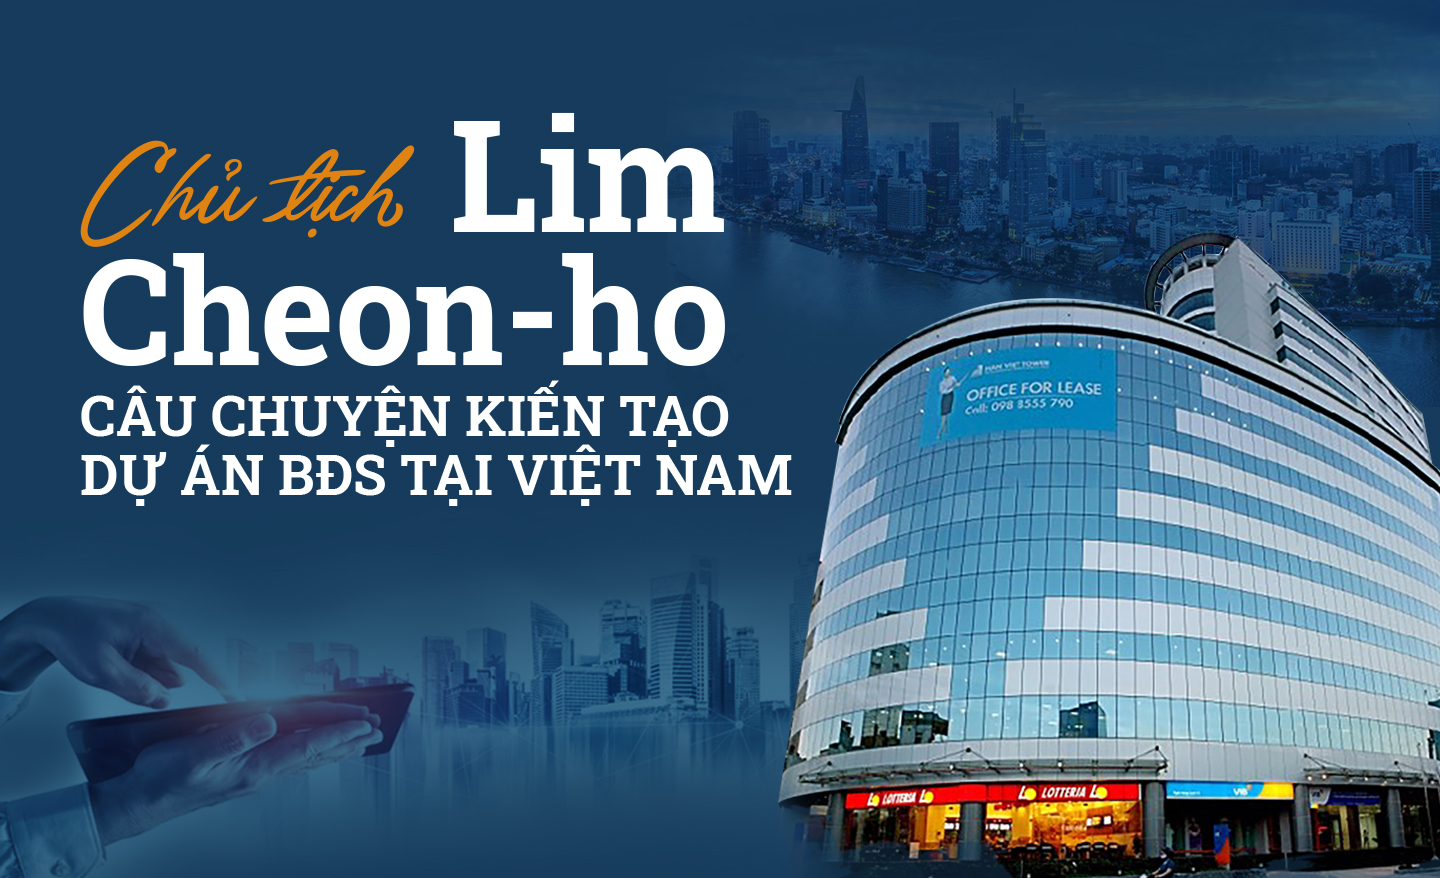 Chủ tịch Lim Cheon-ho và câu chuyện kiến tạo dự án bất động sản tại Việt Nam